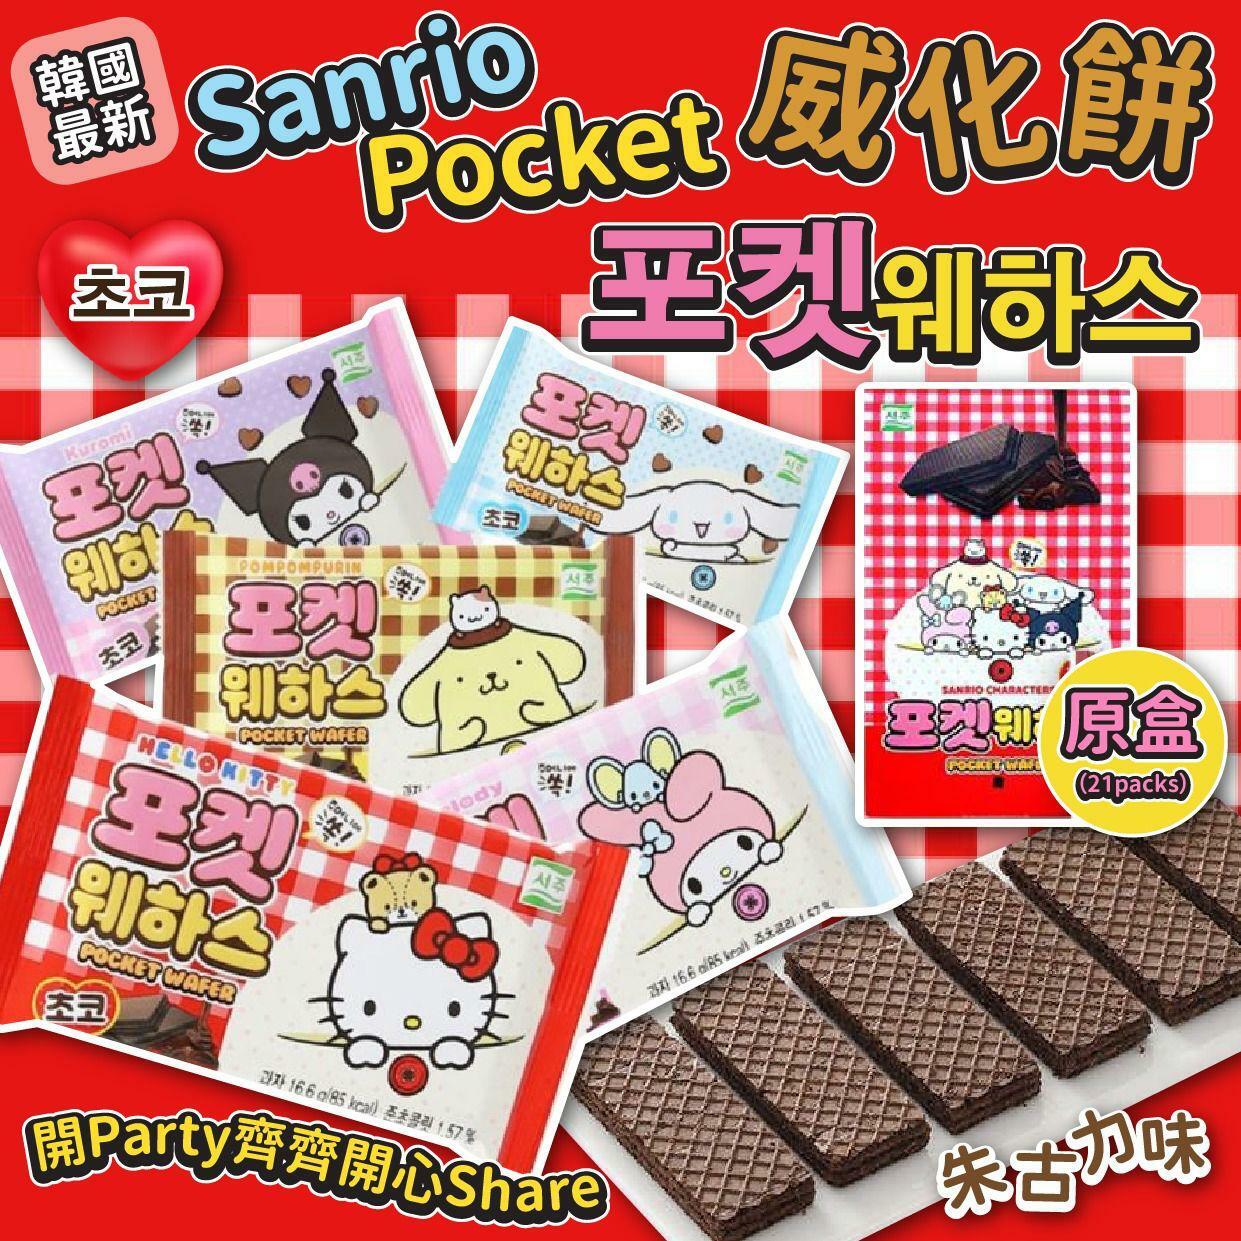 韓國Sanrio Pocket 朱古力威化餅[原盒裝21小包]